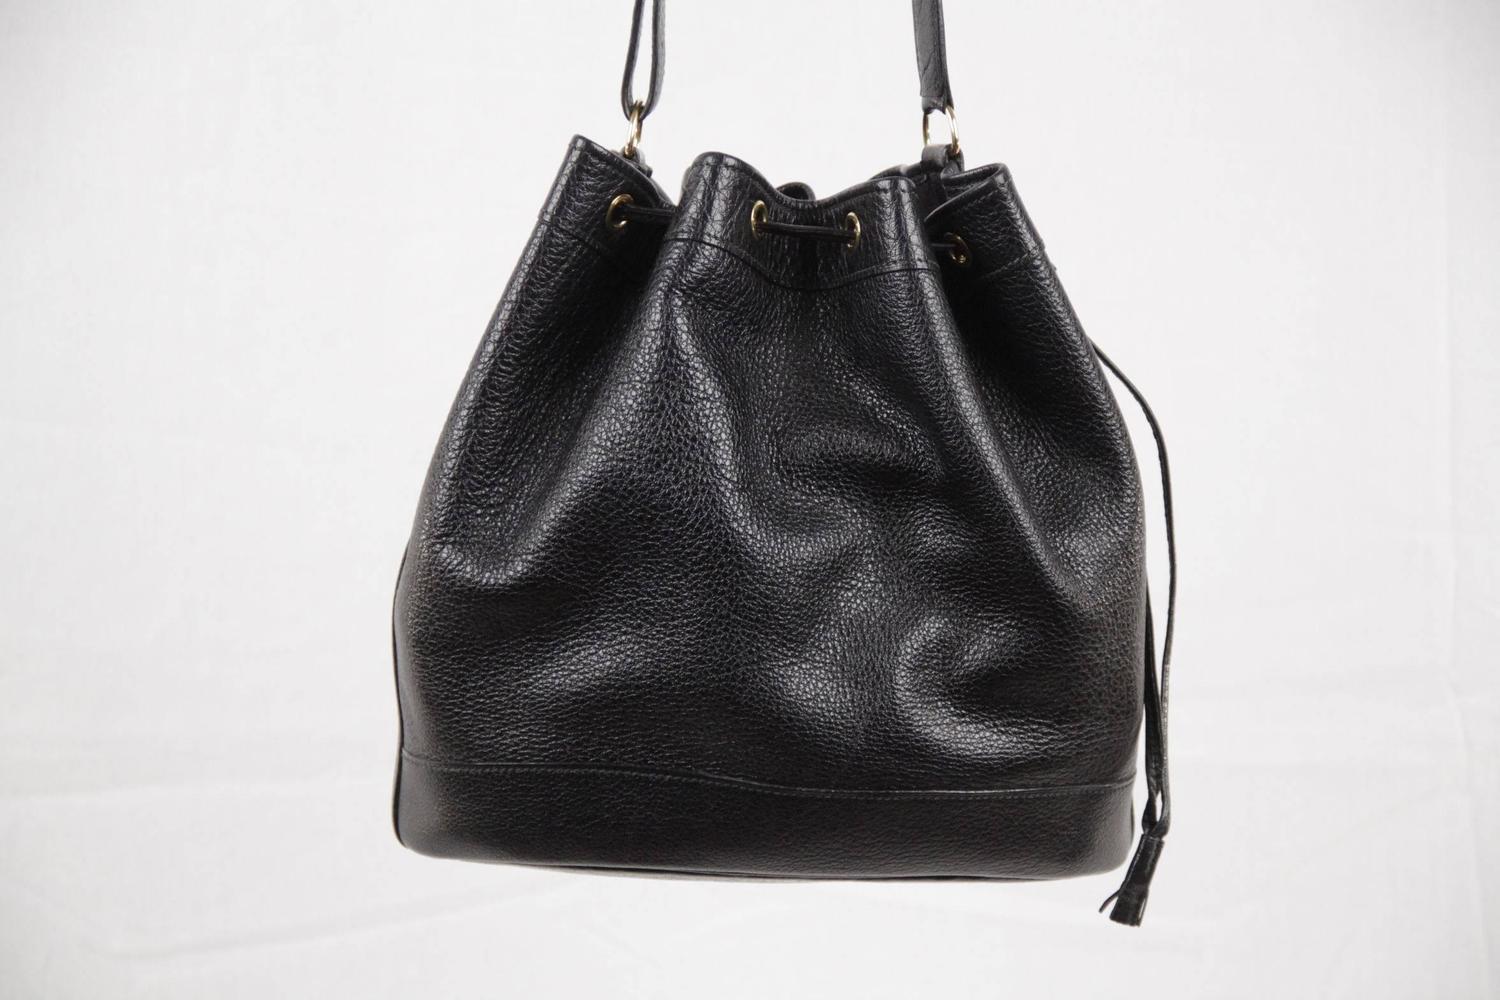 HERMES PARIS Vintage Black Leather MARKET GM Bucket SHOULDER BAG For Sale at 1stdibs